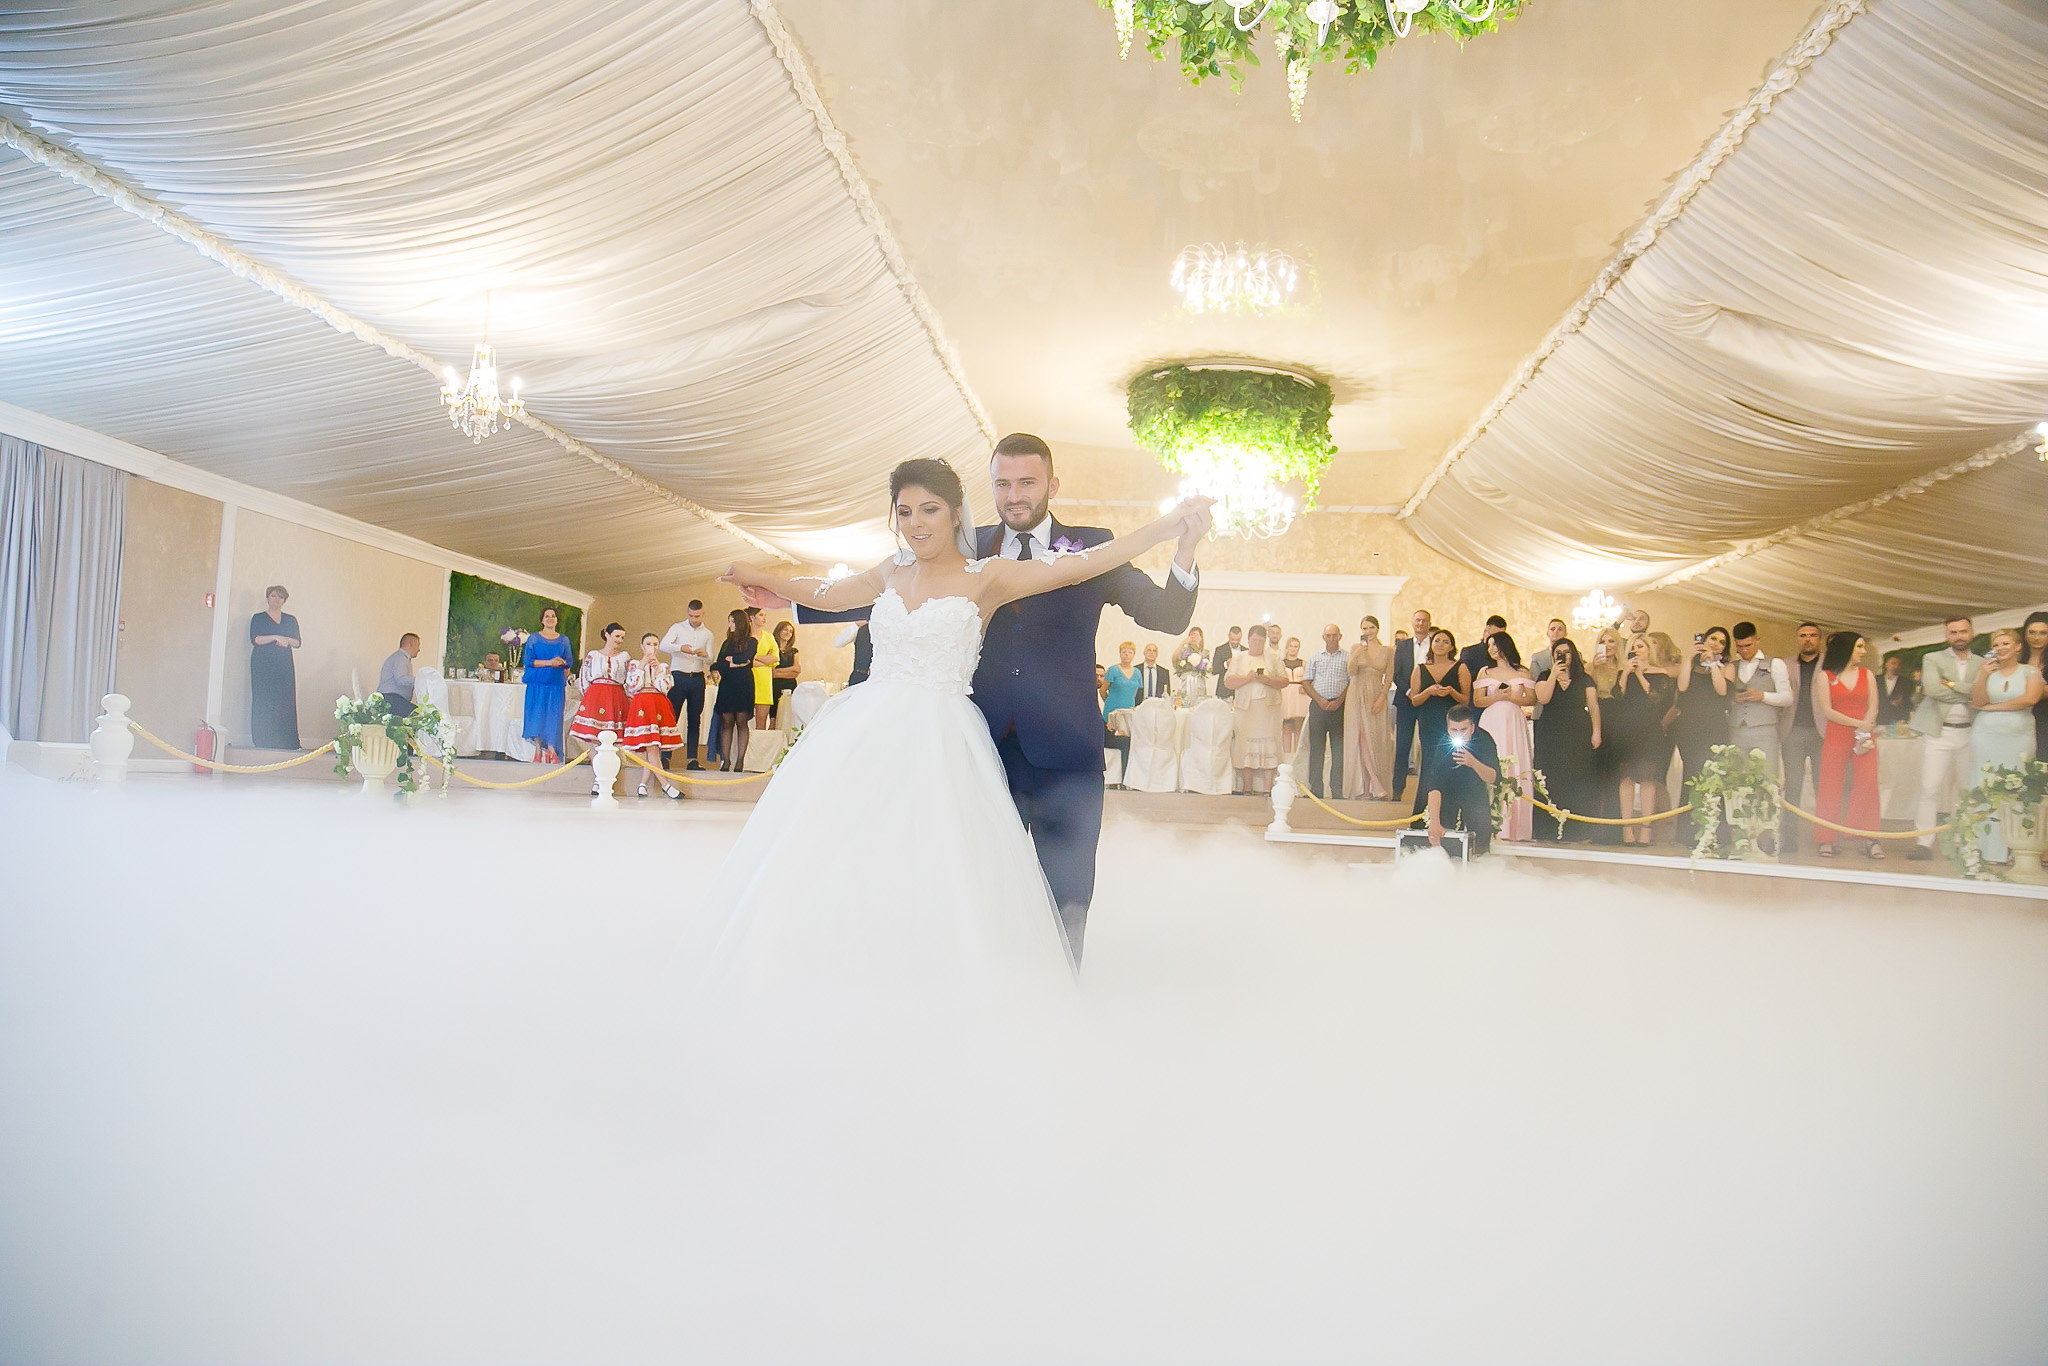 Madalina si Andrei nunta la Castel Iasi BallRoom fotograf profesionist nunta iasi paul padurariu www.paulpadurariu.ro 2018 15